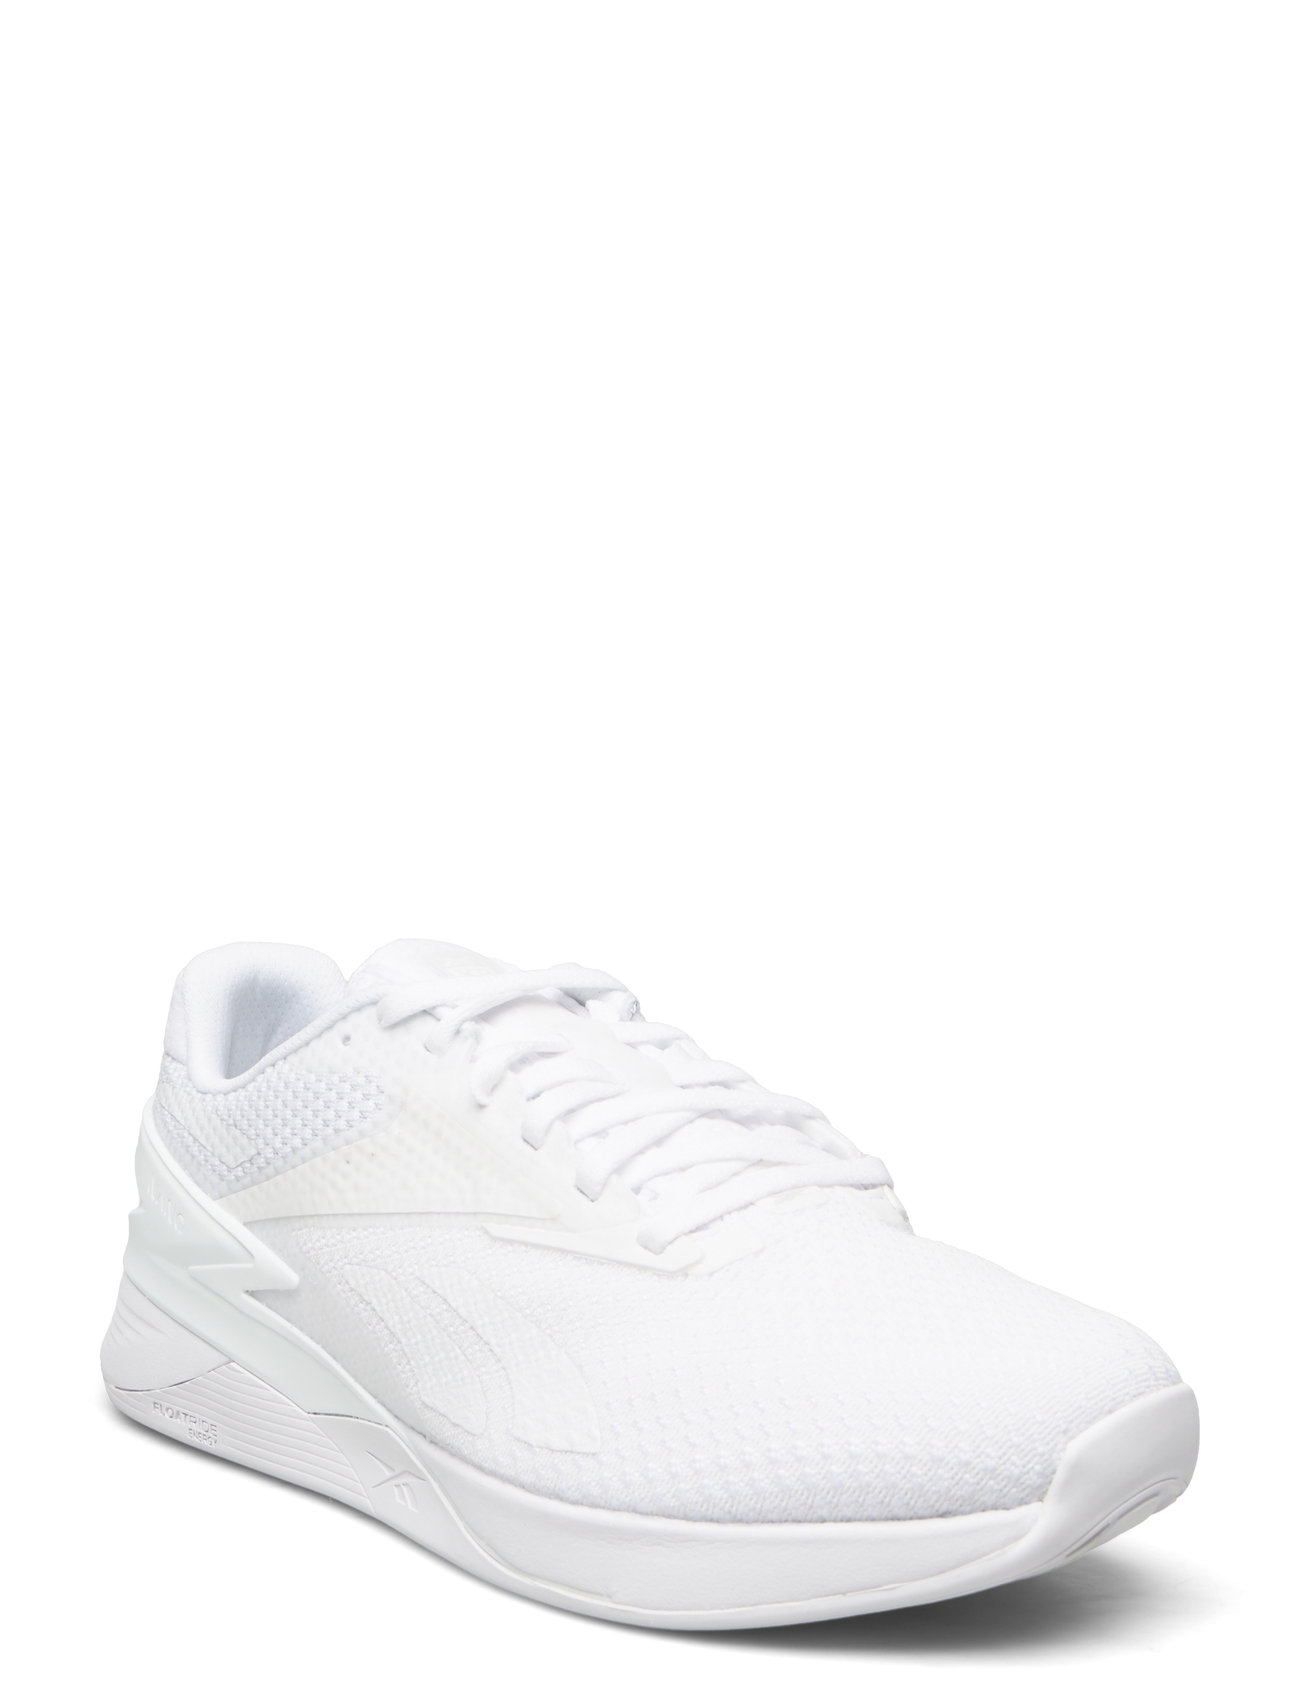 "Reebok Performance" "Nano X3 Sport Sneakers Low-top White Reebok